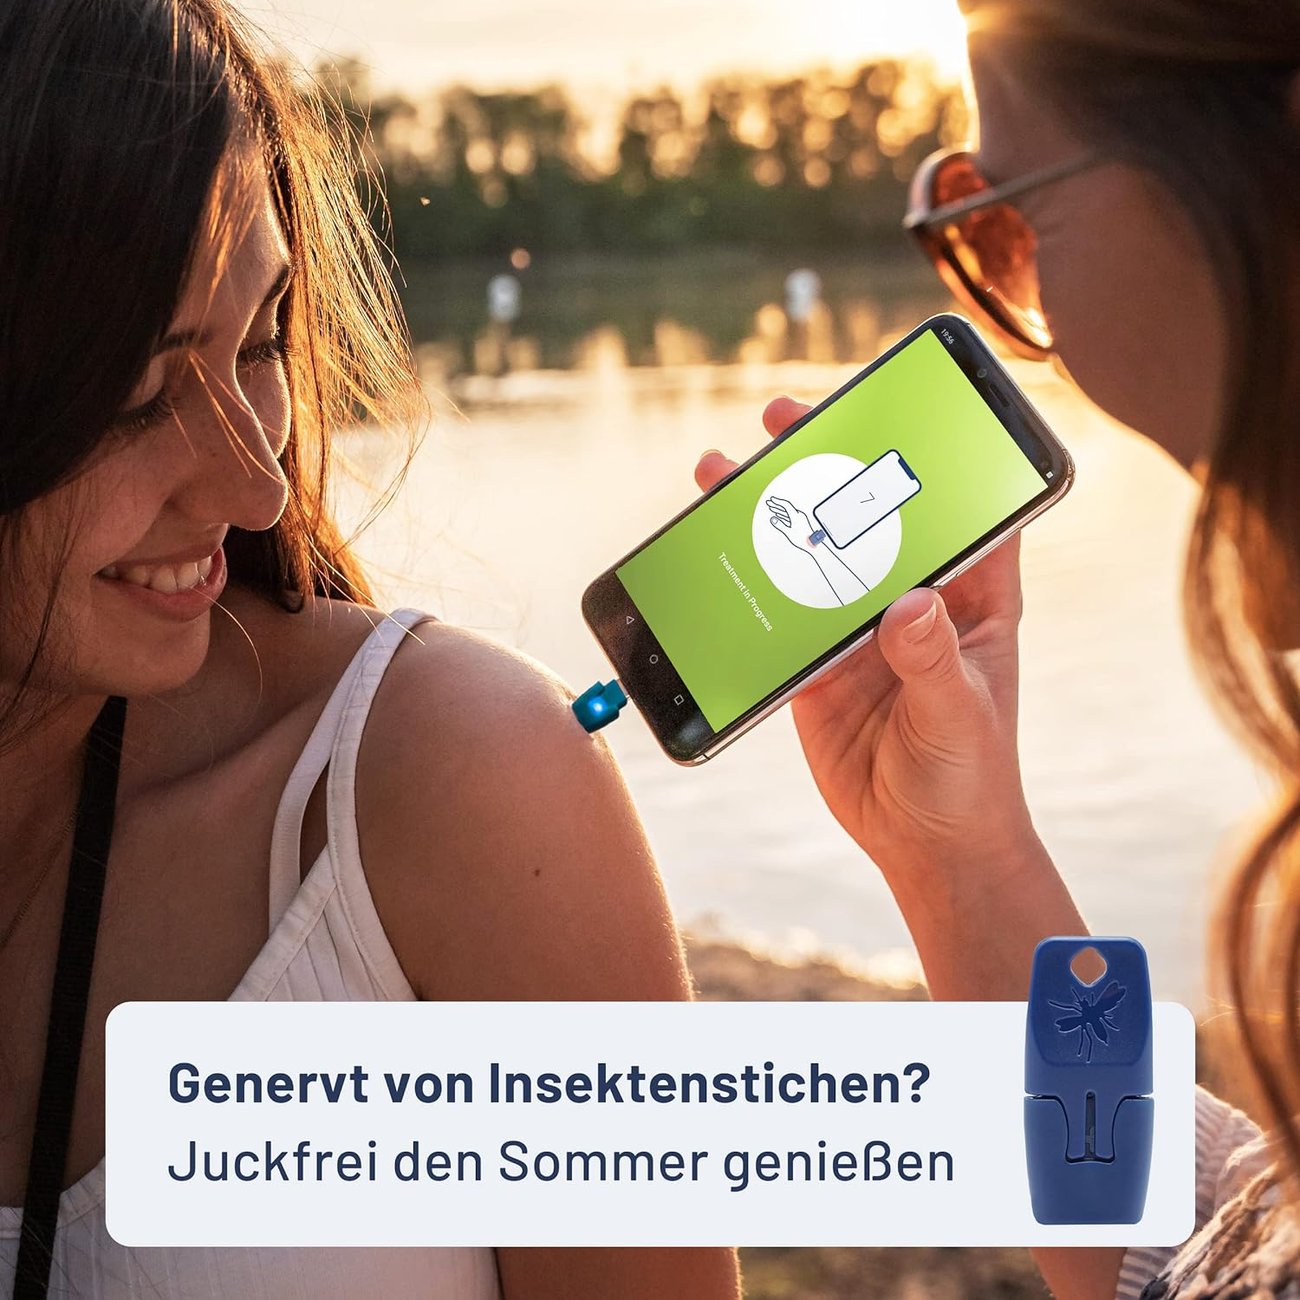 heat it - Insektenstichheiler fürs Smartphone